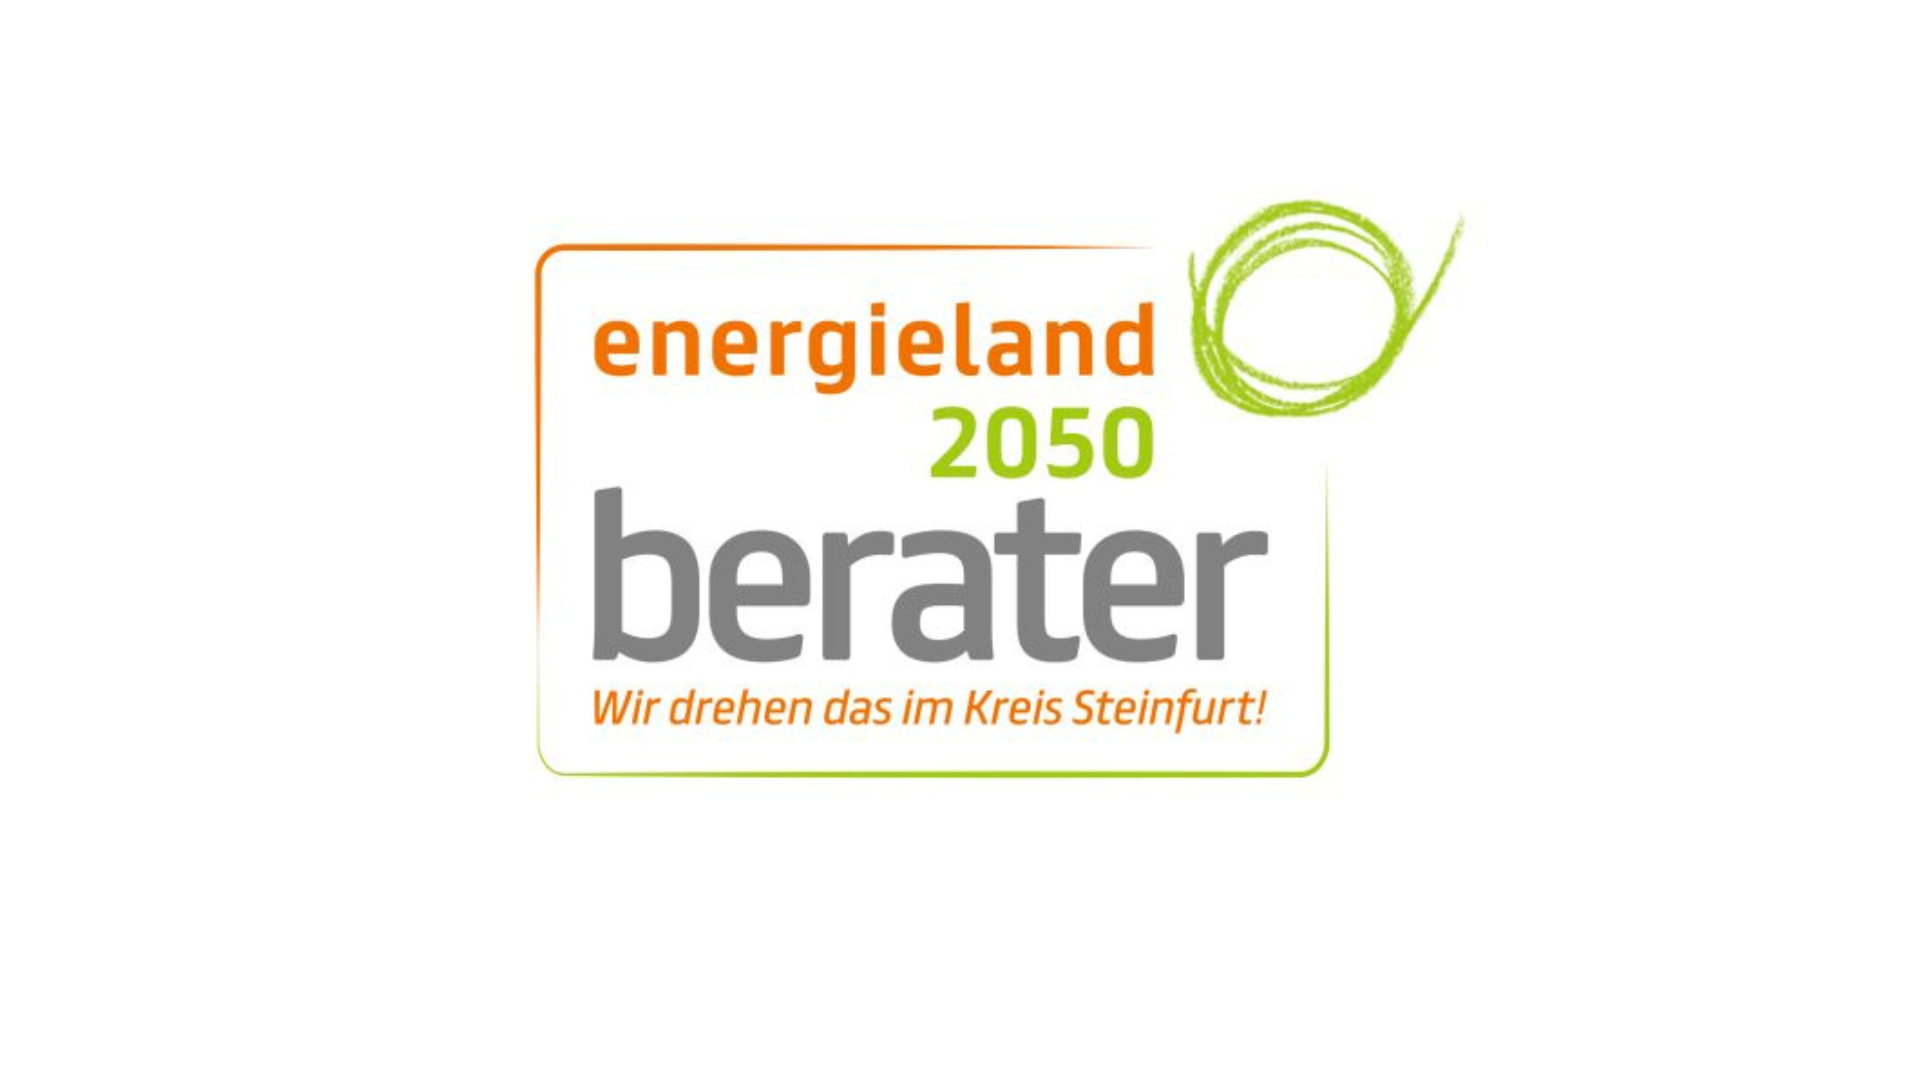 Die geschützte Marke "energieland2050 Berater" steht für qualitativ hochwertige Beratungskompetenz im Kreis Steinfurt.